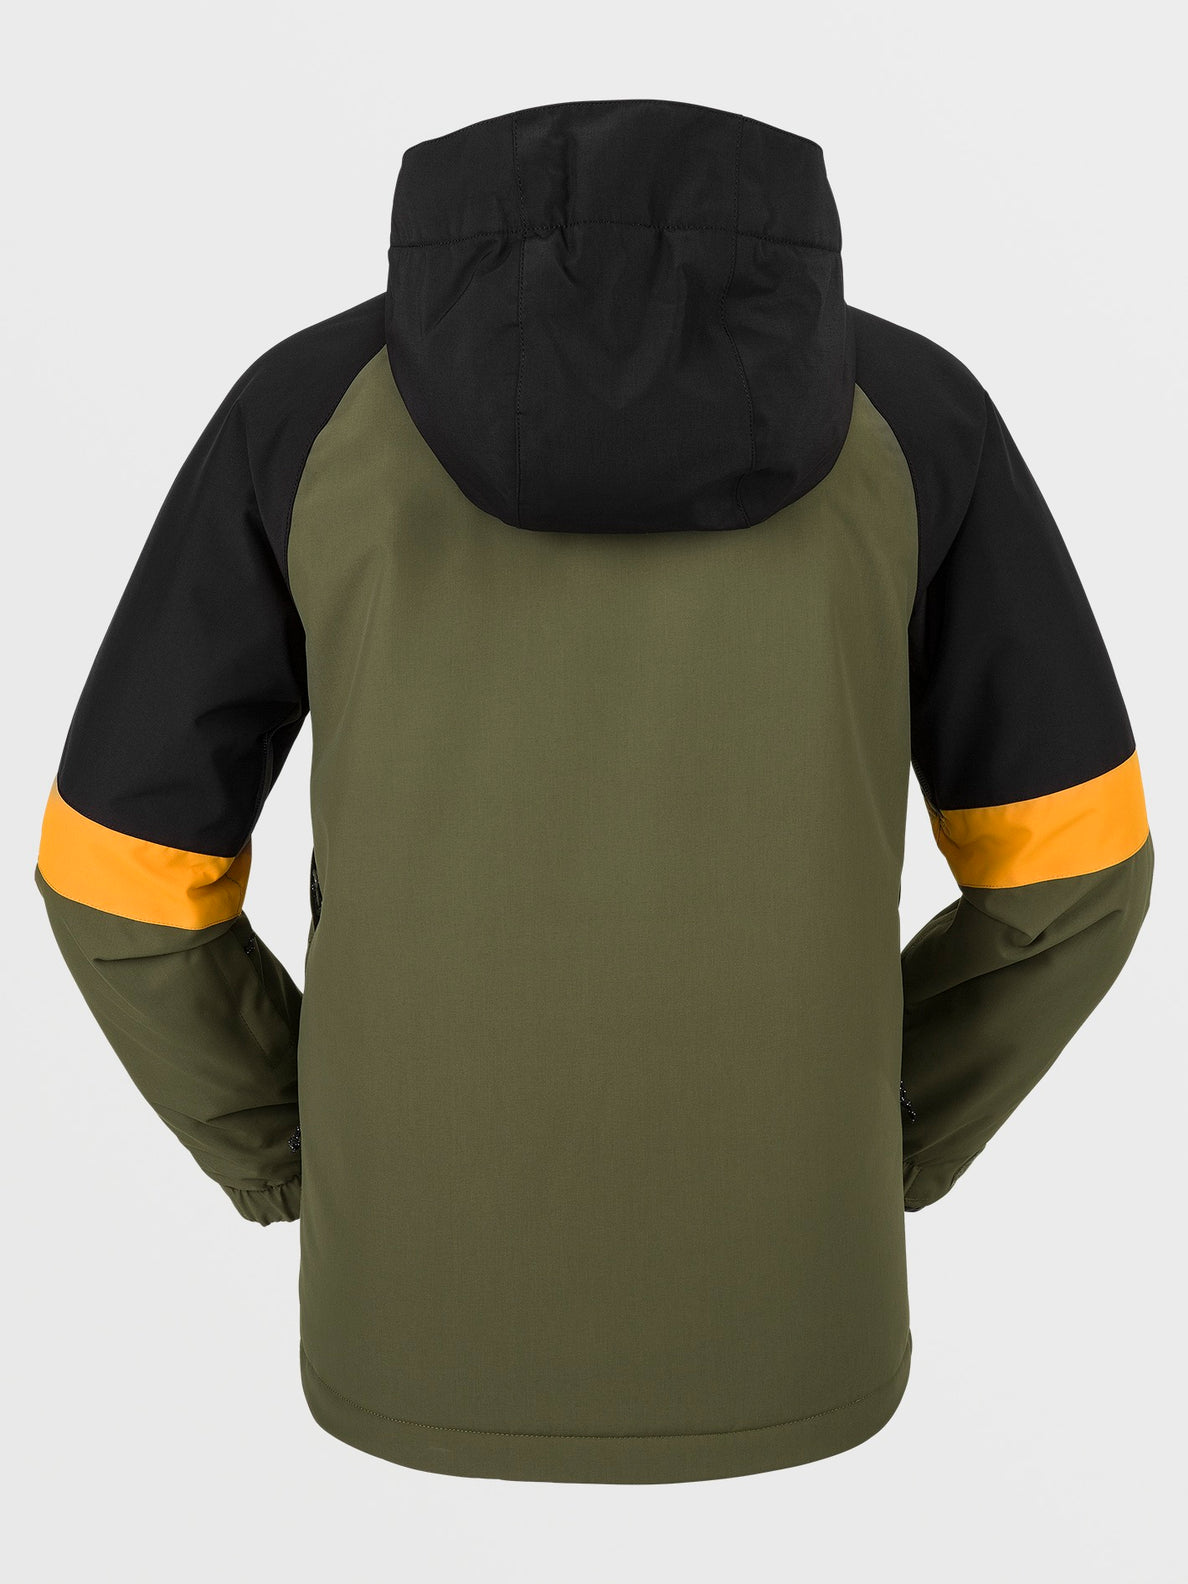 Kids Sawmill Insulated Jacket - Military (I0452401_MIL) [B]